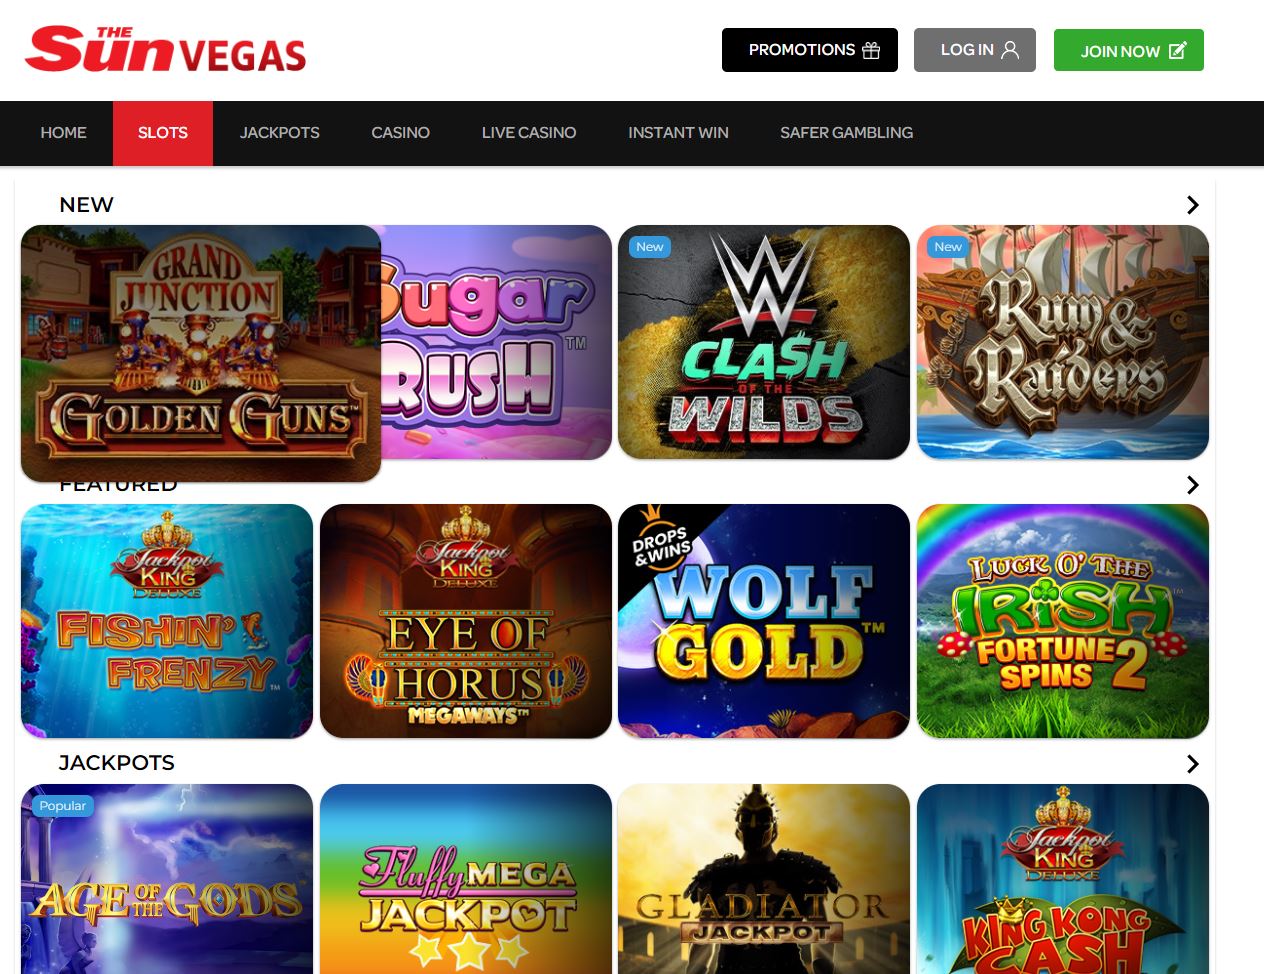 The Sun Vegas slot games